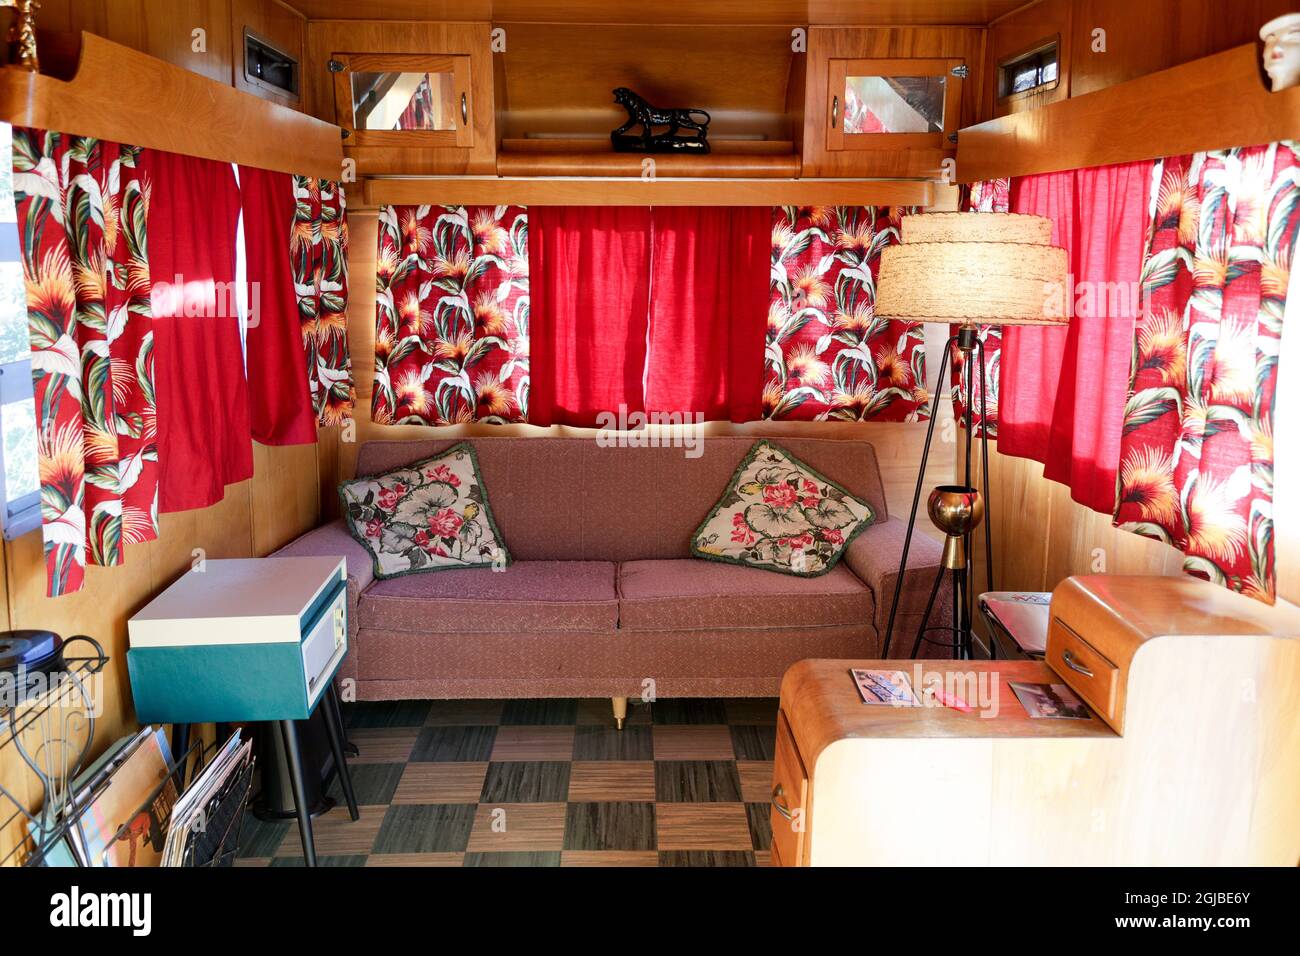 trailer park living room